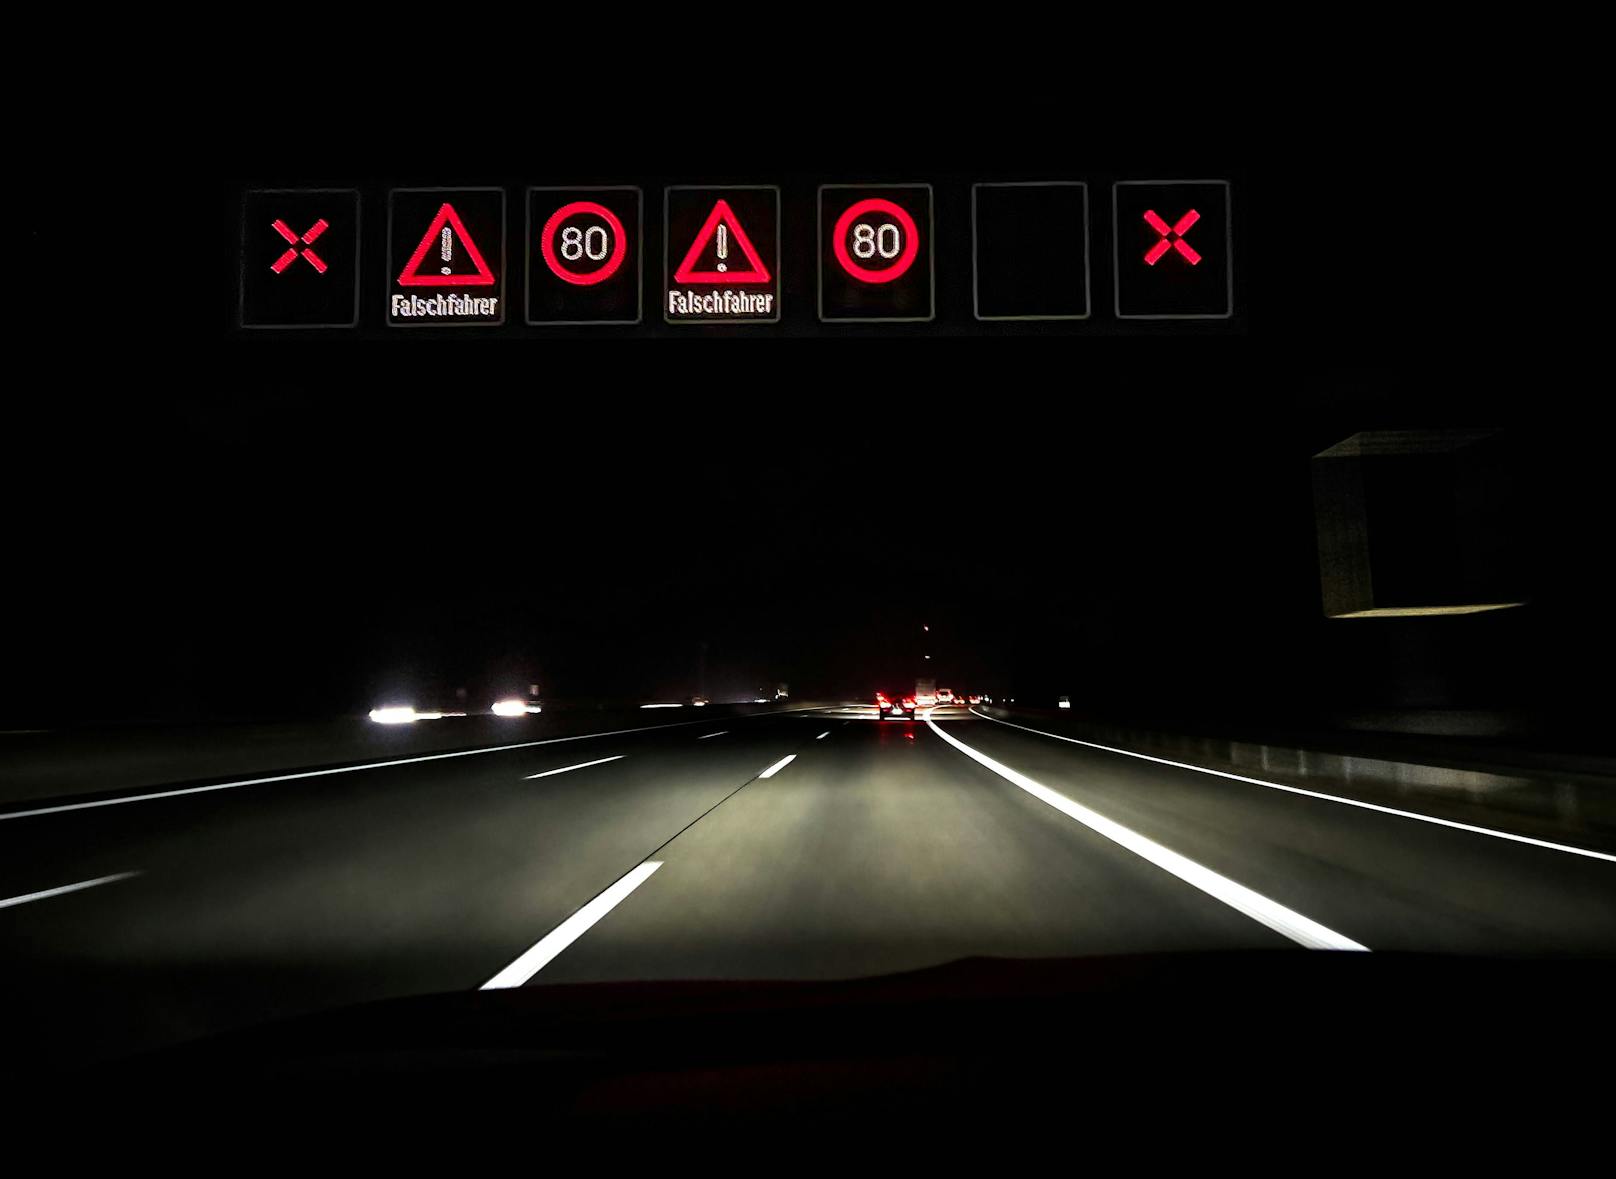 Warnung vor einem Geisterfahrer (Falschfahrer) auf einer Autobahn.